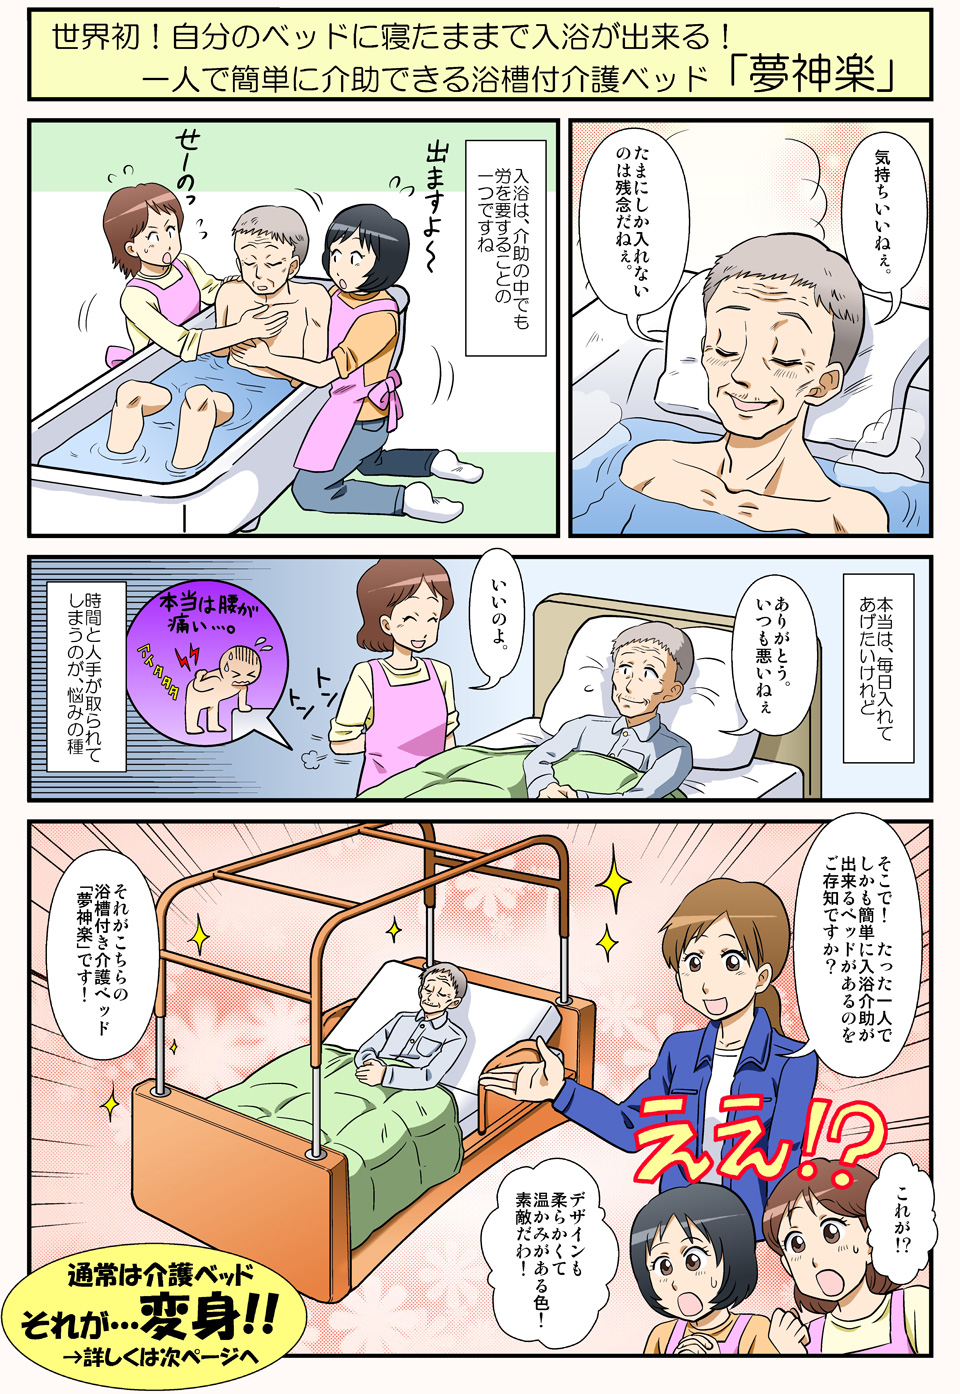 漫画で解説：一人で簡単に介助できる浴槽付介護ベッド「夢神楽」01